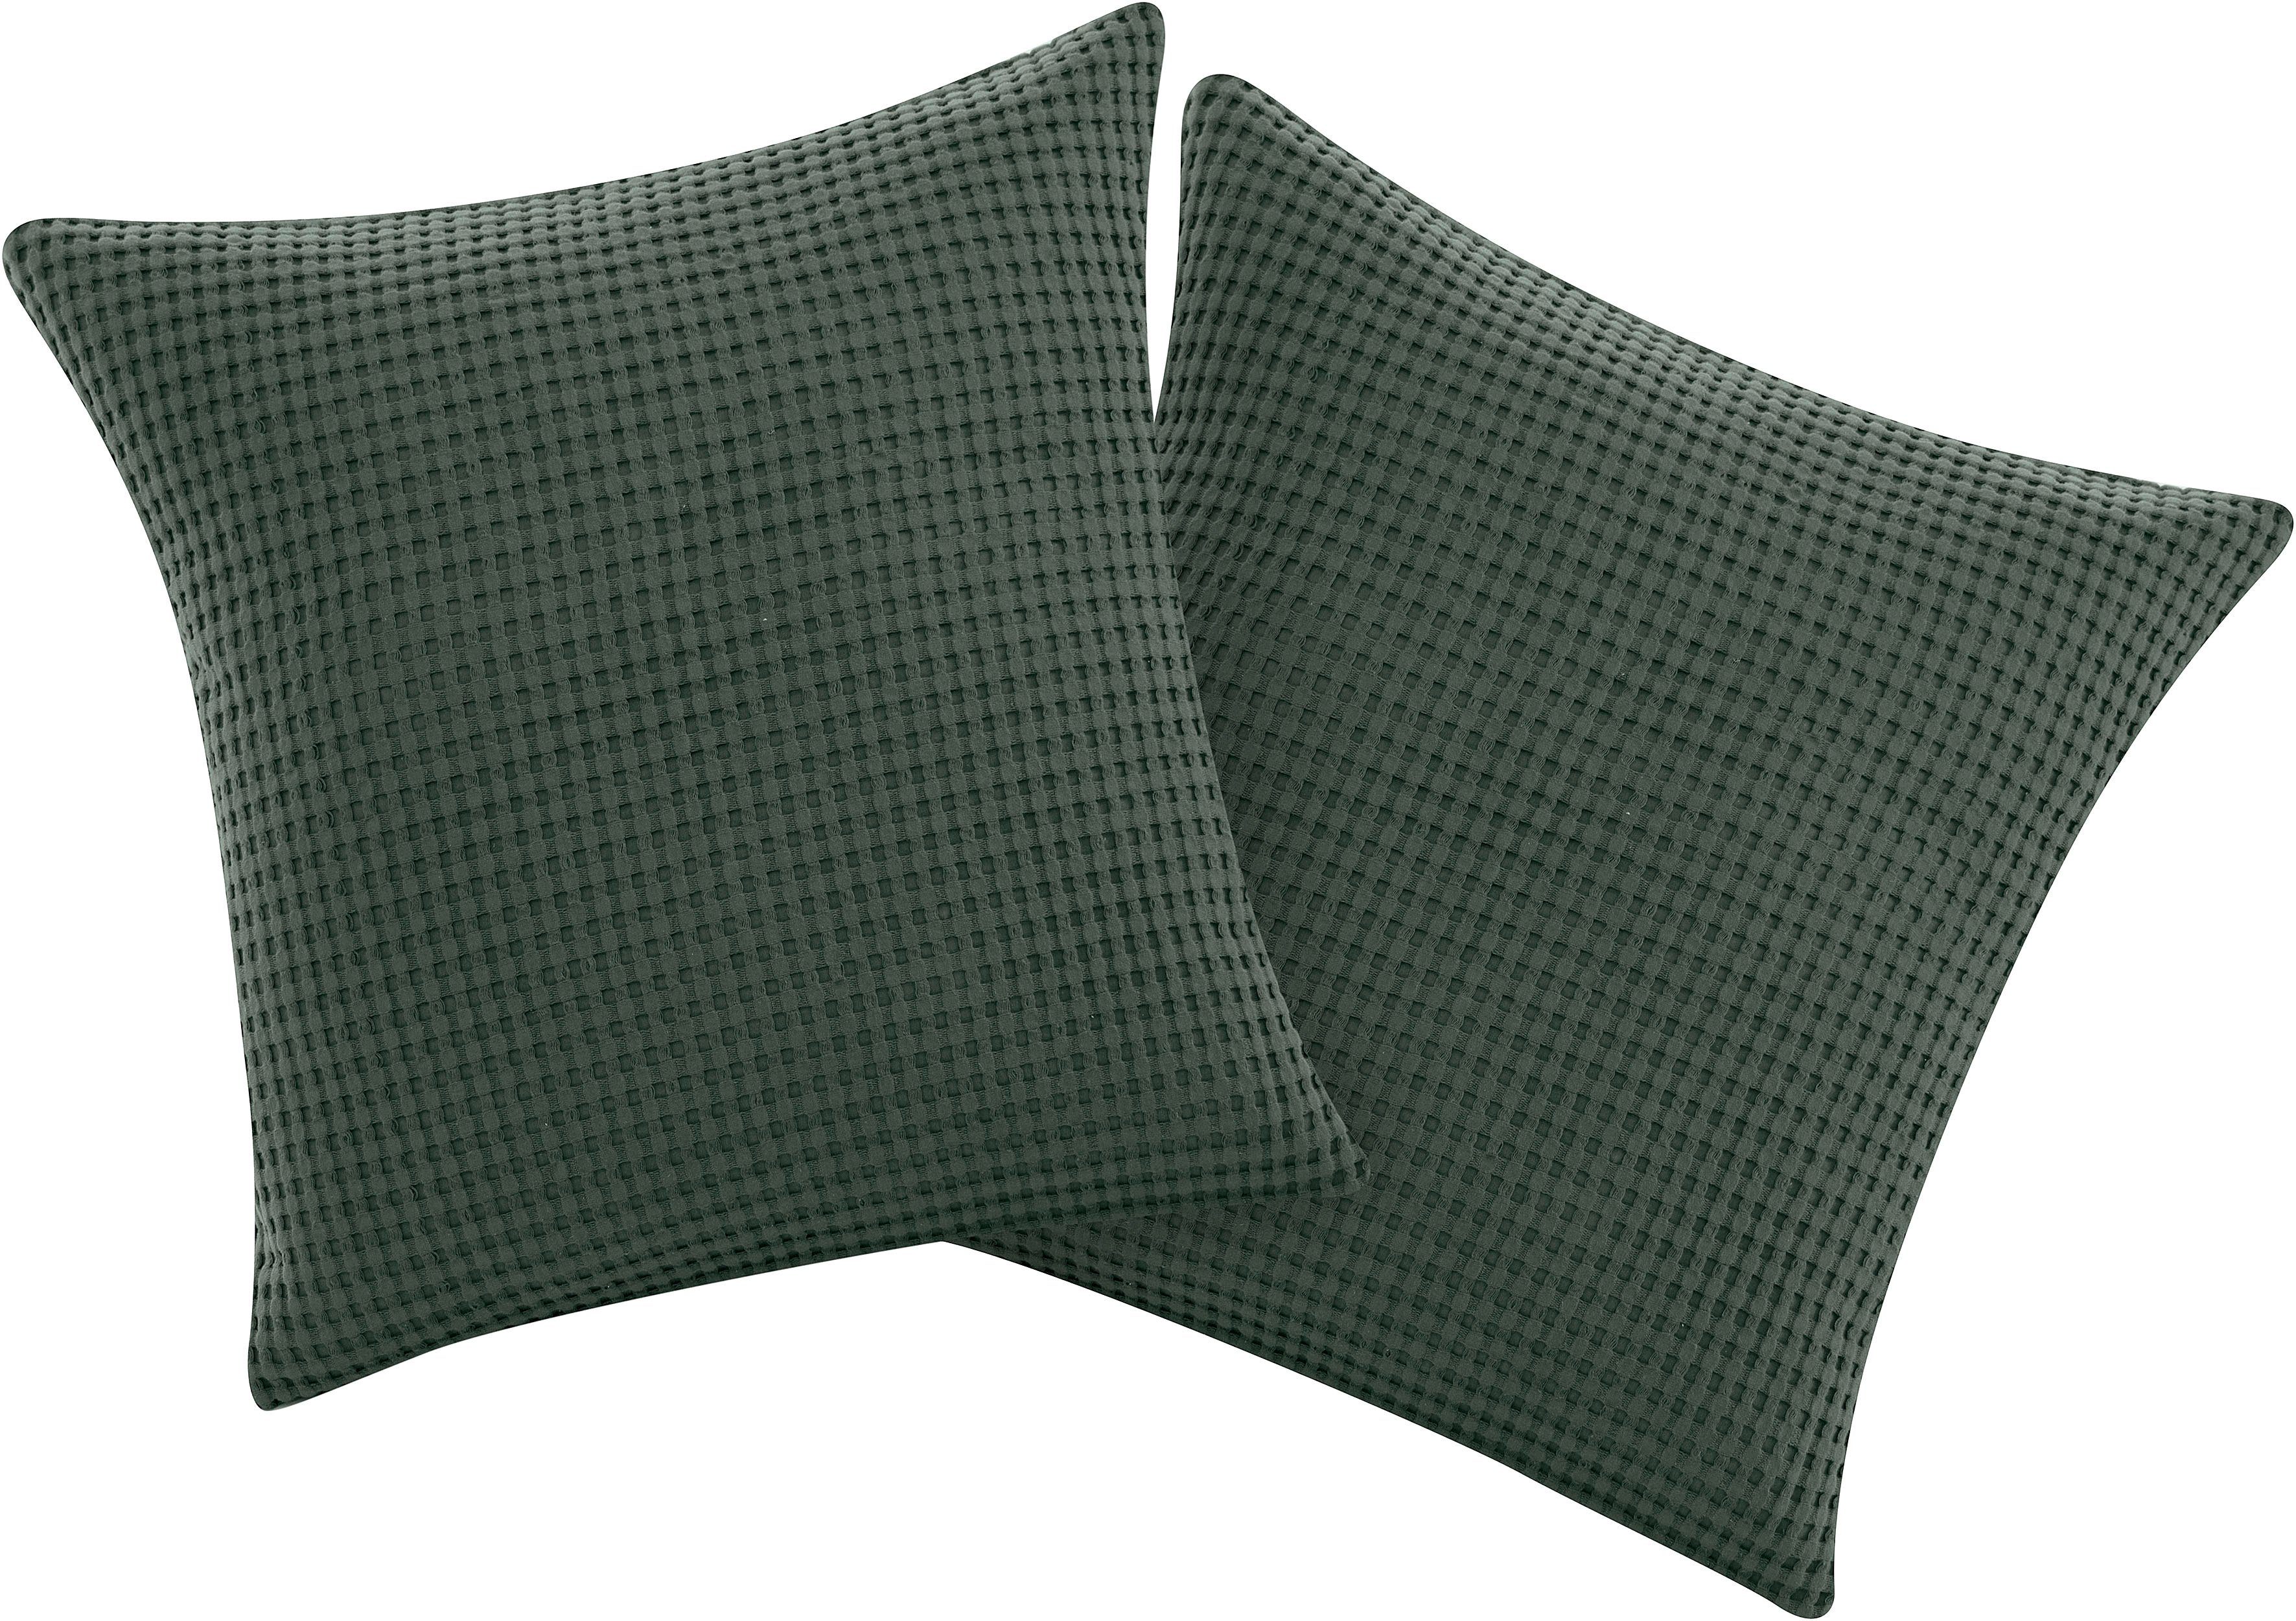 Kissenhülle GRETA 2, andas (2 Stück), in Waffleepiquee Optik, viele Farben erhältlich, Bezug in 50x50 cm dunkelgrün